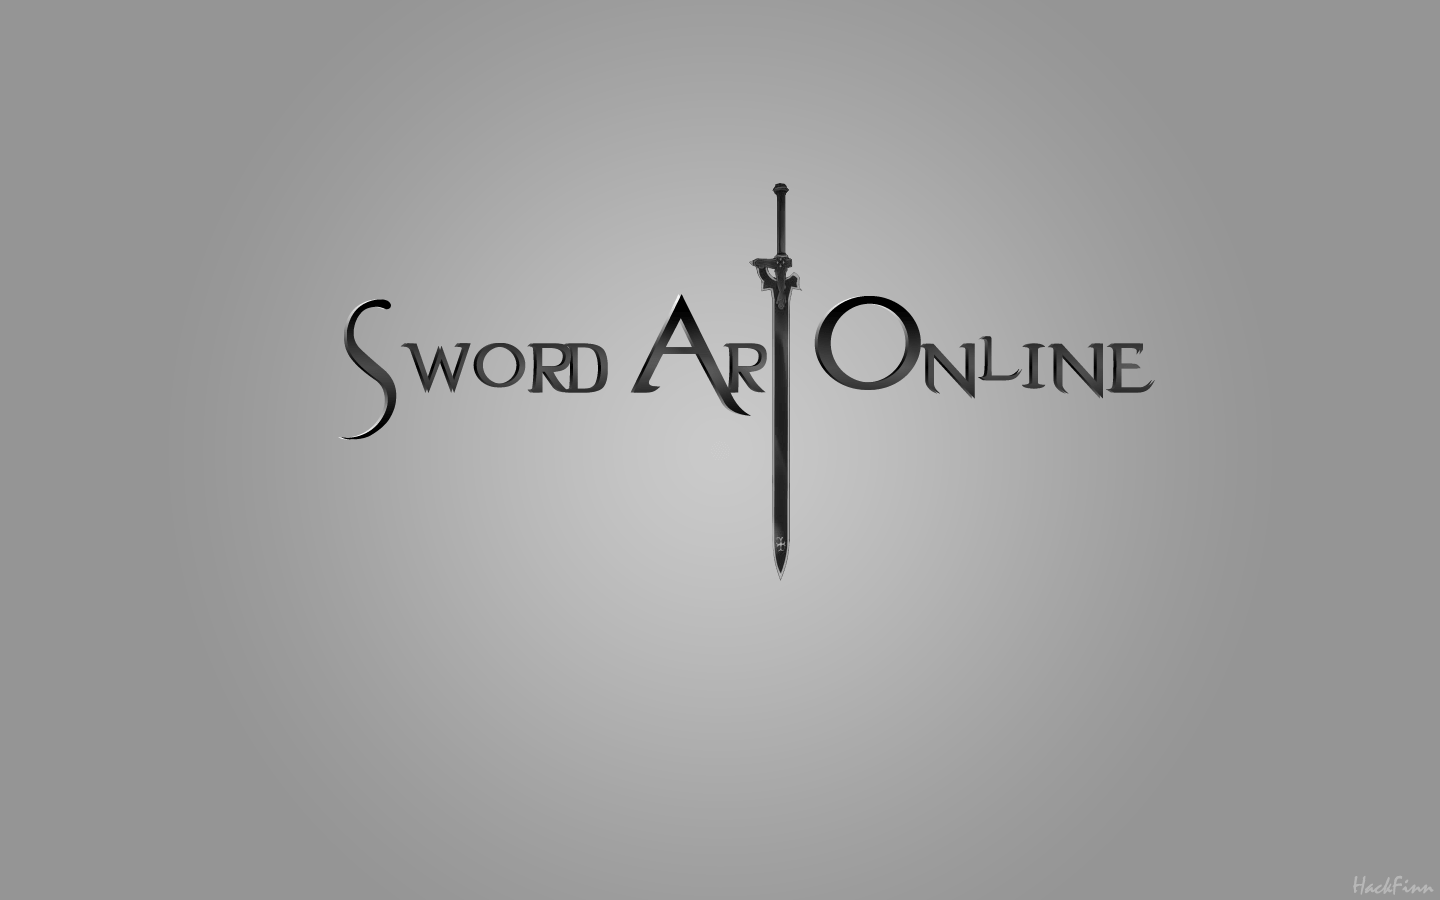 Sword Art Online Logo Wallpapers Top Free Sword Art Online Logo Backgrounds Wallpaperaccess